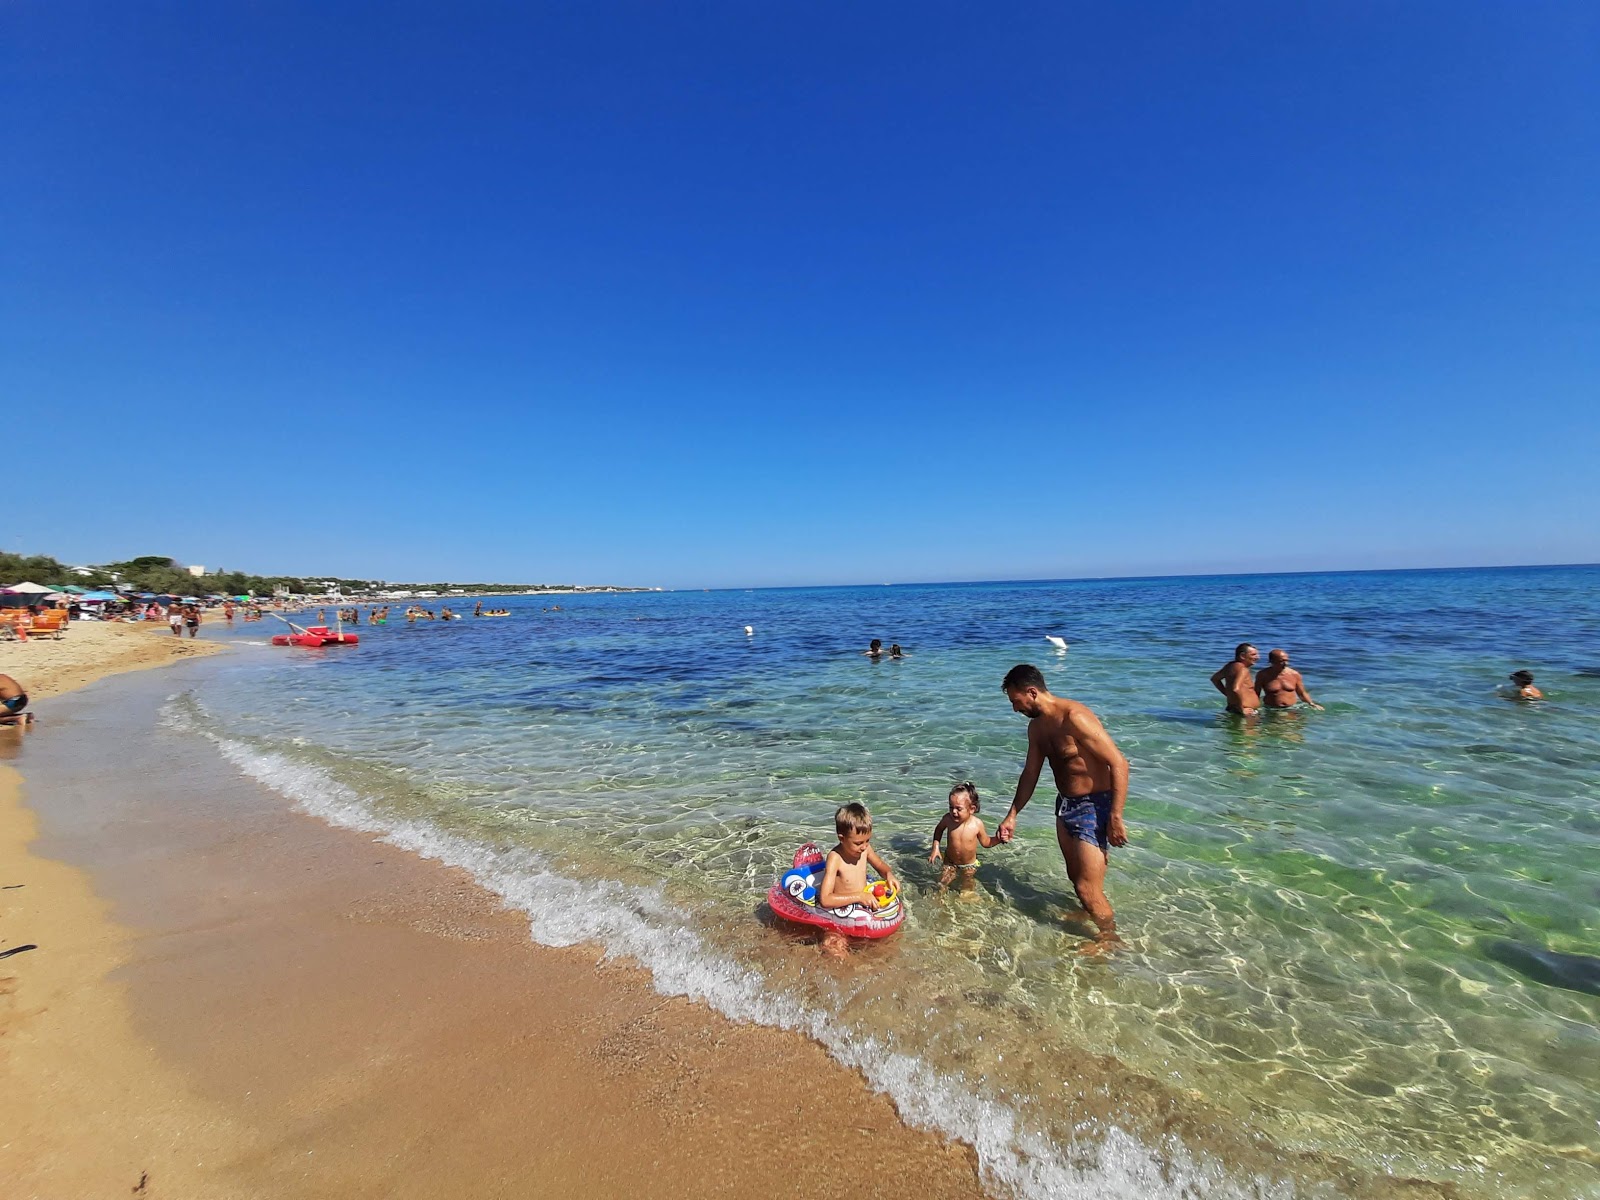 Agavi beach'in fotoğrafı parlak kum yüzey ile